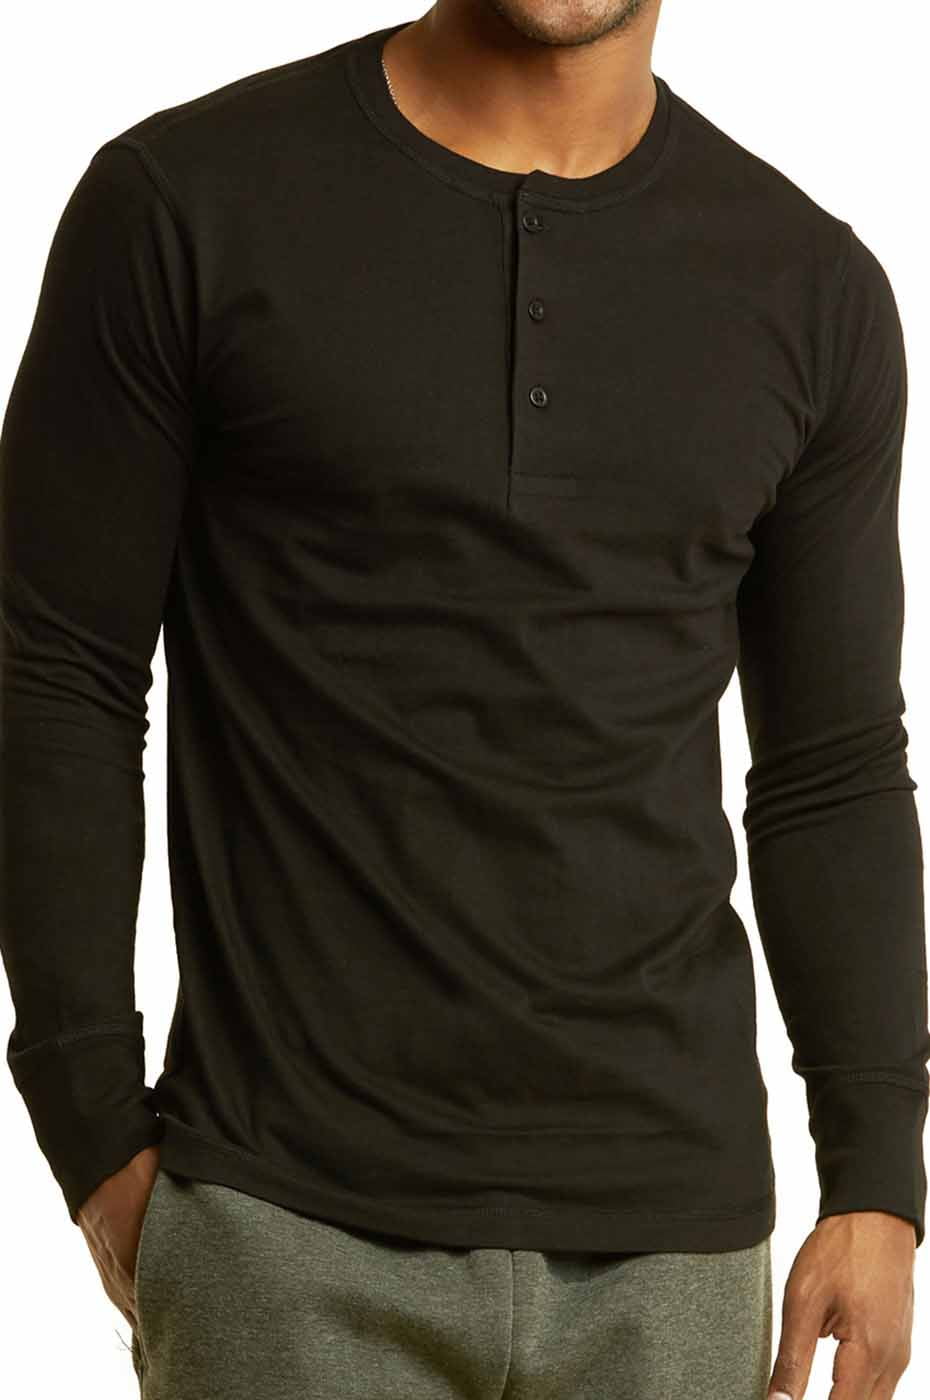 Mens Henley Long Sleeve T Shirt 3 Button Tee Shirts for Men 